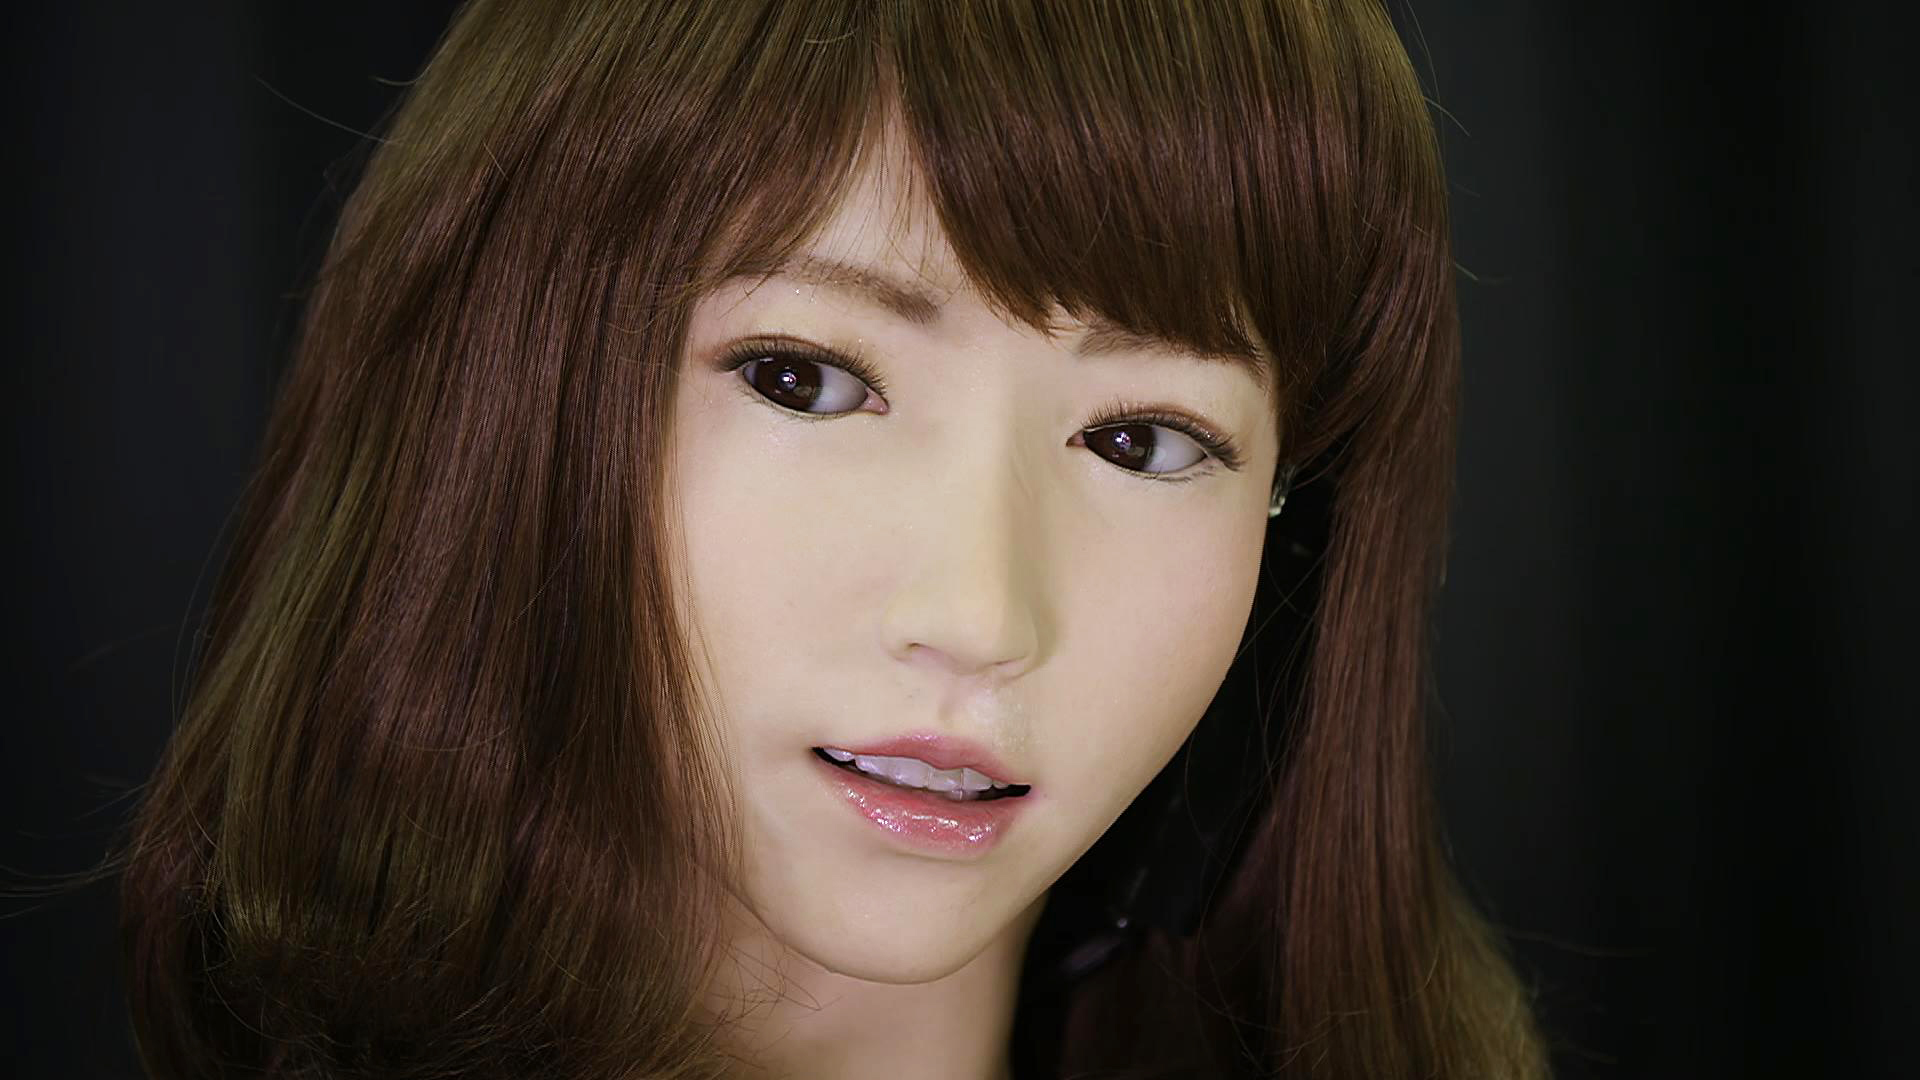 Робот ще чете новини по японска телевизия